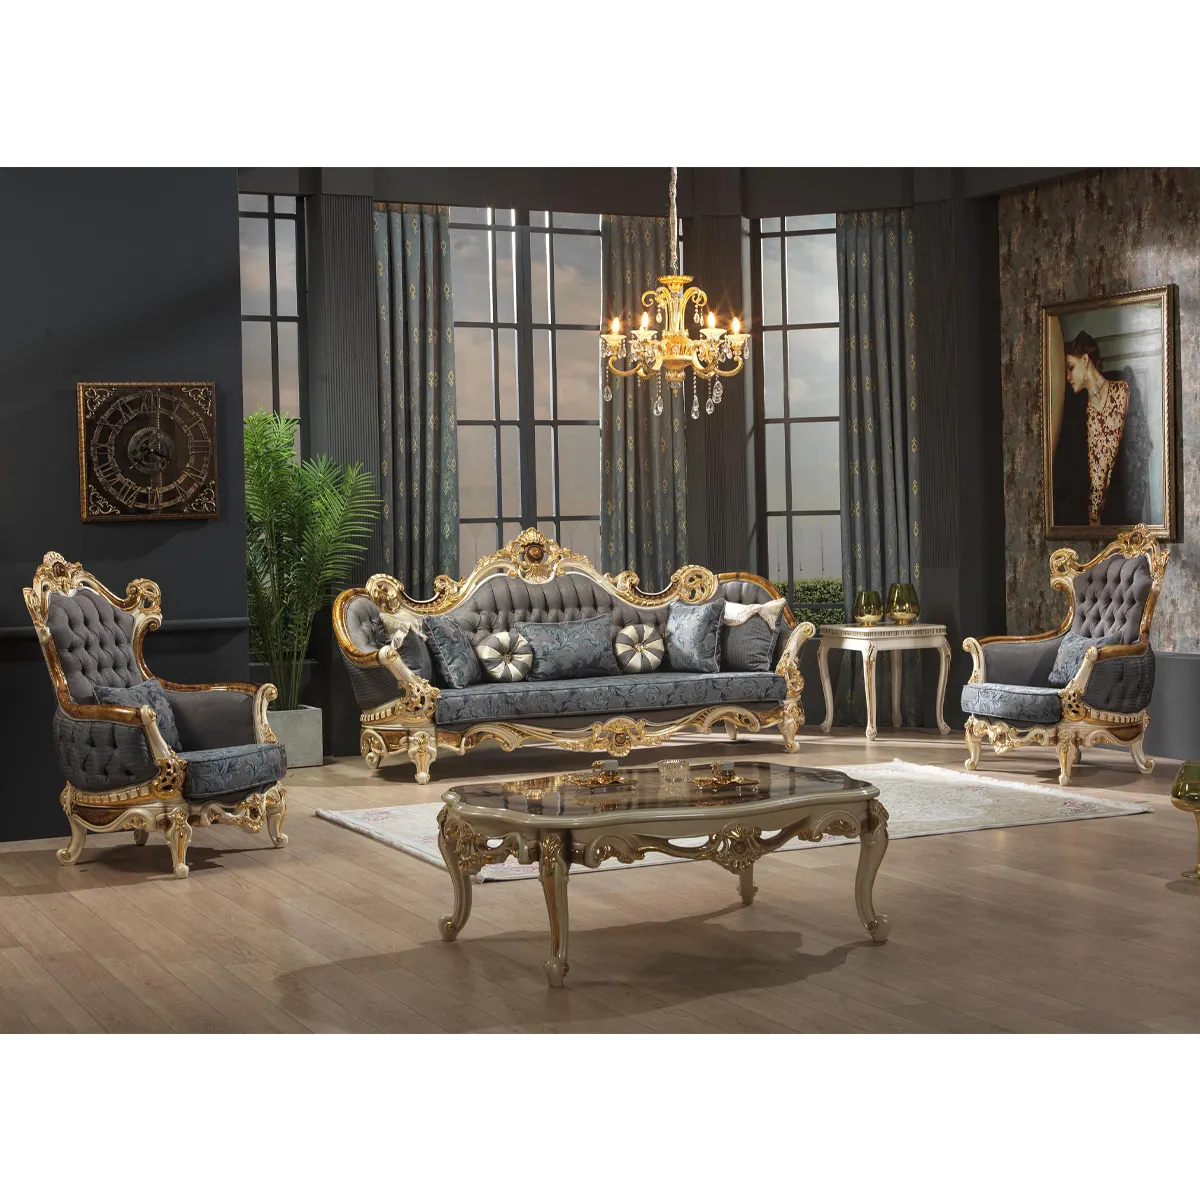 Старинные наборы для гостиной, старинный резной диван, лидер продаж, диваны для гостиной, тканевый диван, античный классический стиль, деревянный